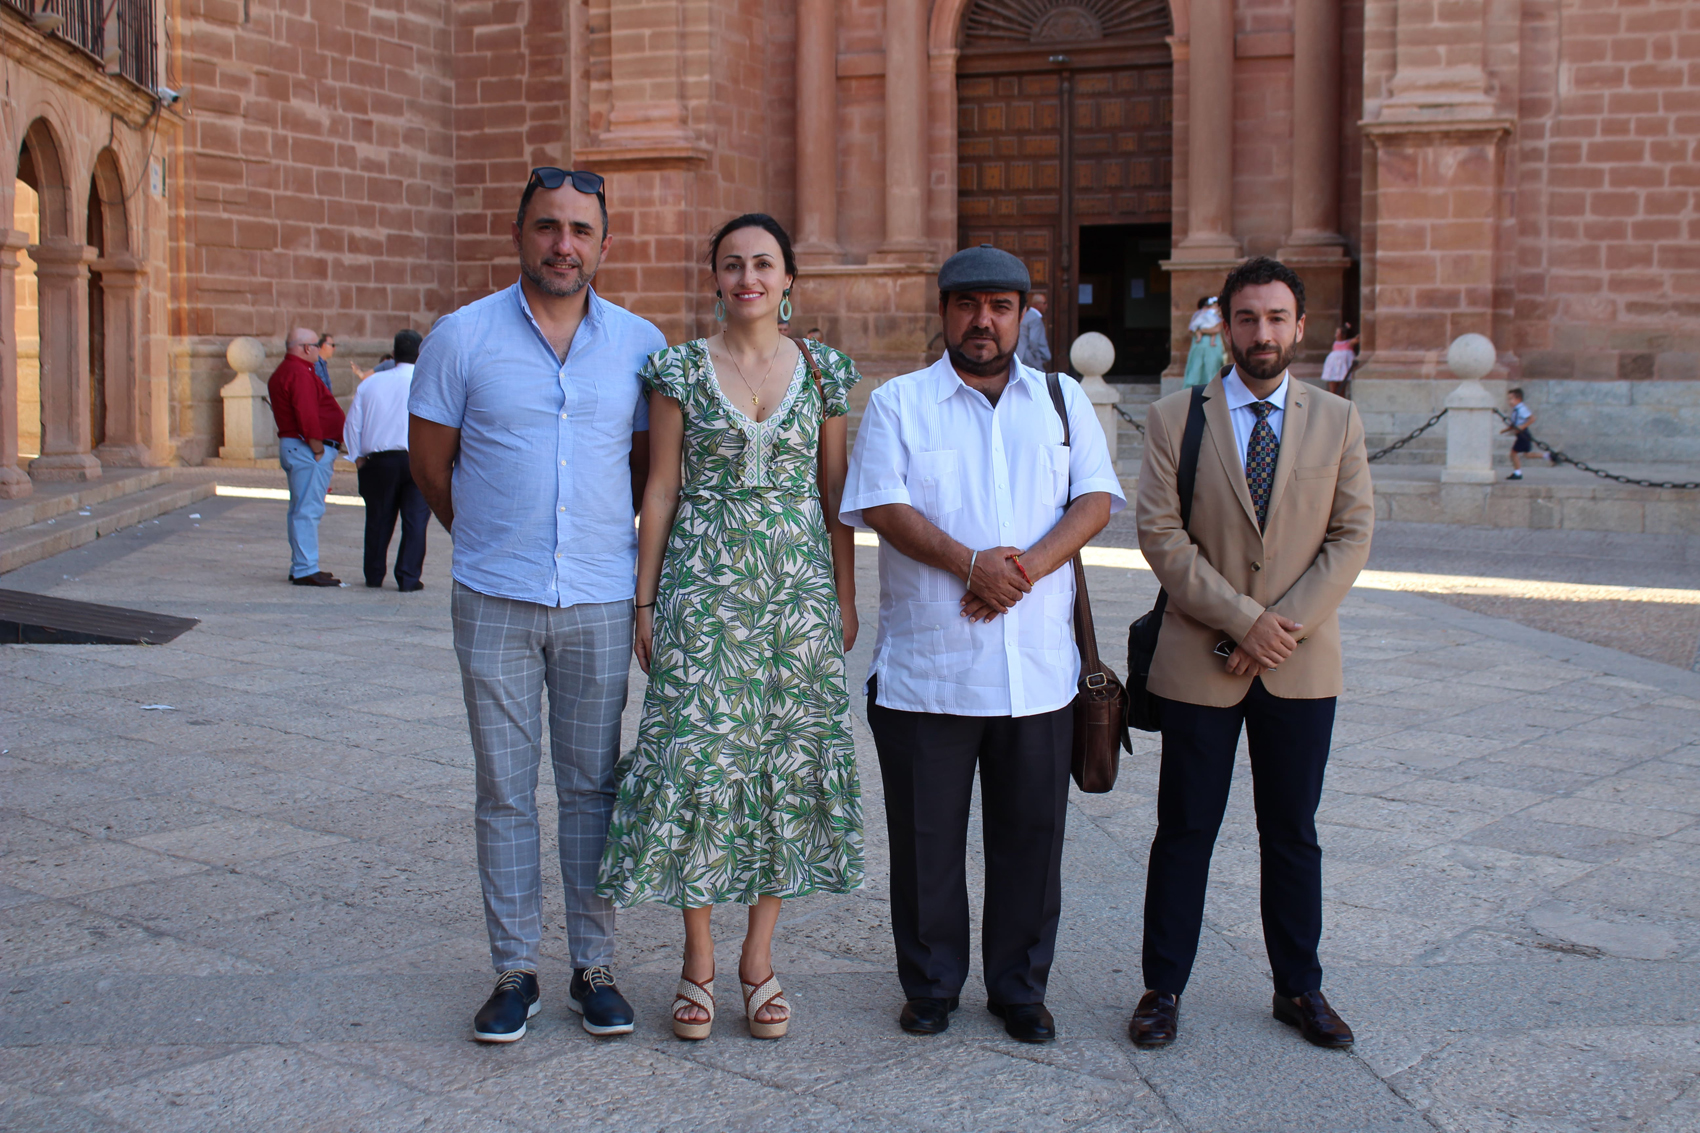 La Embajada de Honduras en España se interesa por Villanueva de los Infantes para realizar intercambios culturales, educativos y turísticos